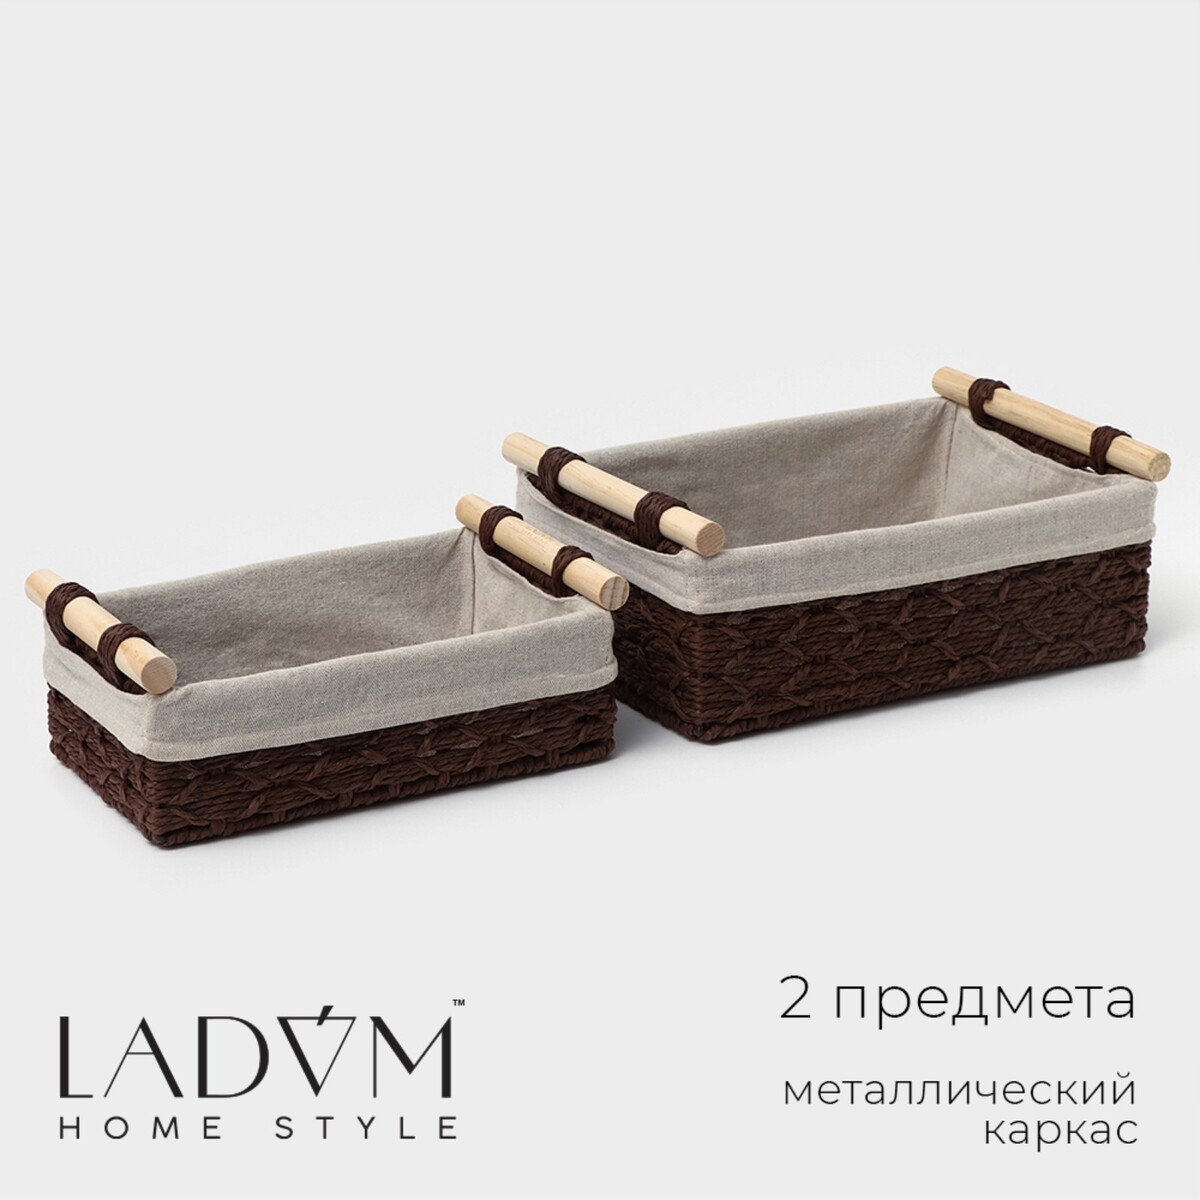 Набор корзин для хранения с ручками ladо́m, ручное плетение, 2 шт: 26×15×10 см, 31×20×12 см, цвет коричневый